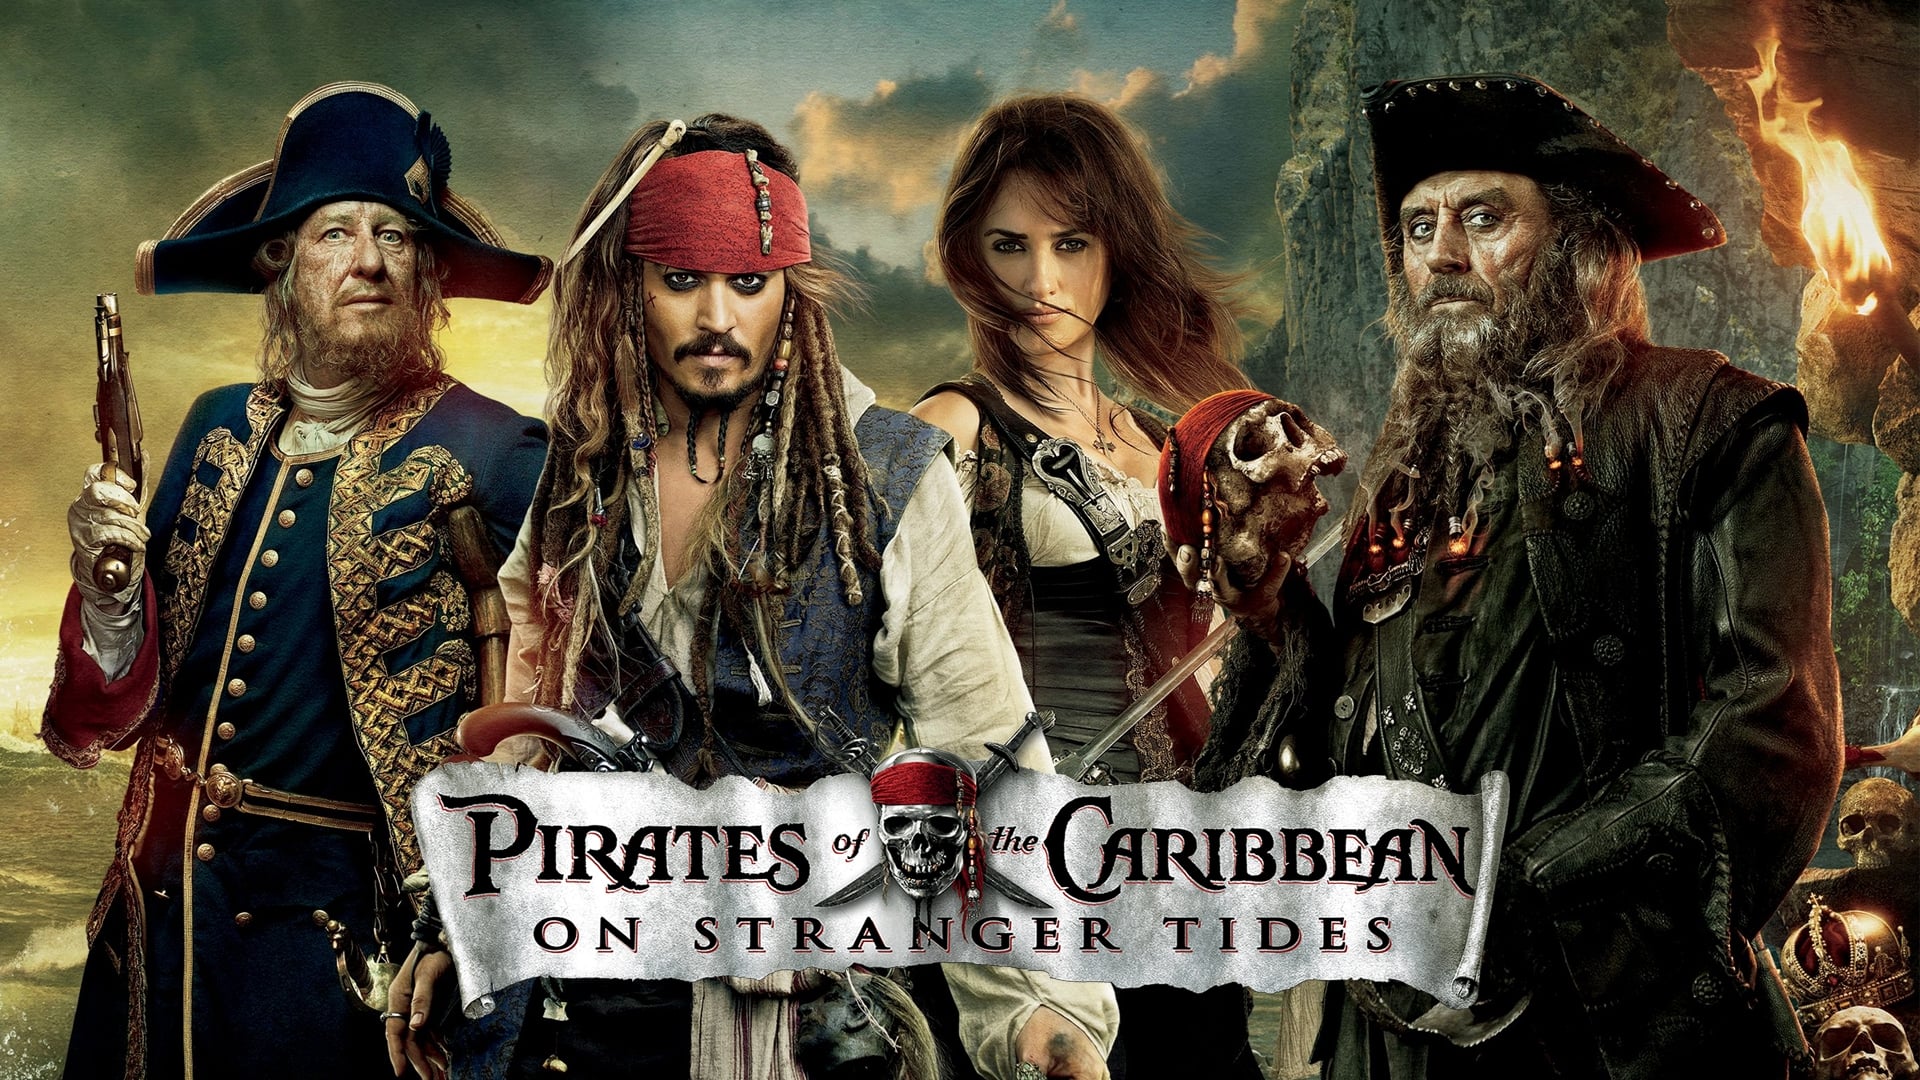 Пираты Карибского моря: На странных берегах (2011)